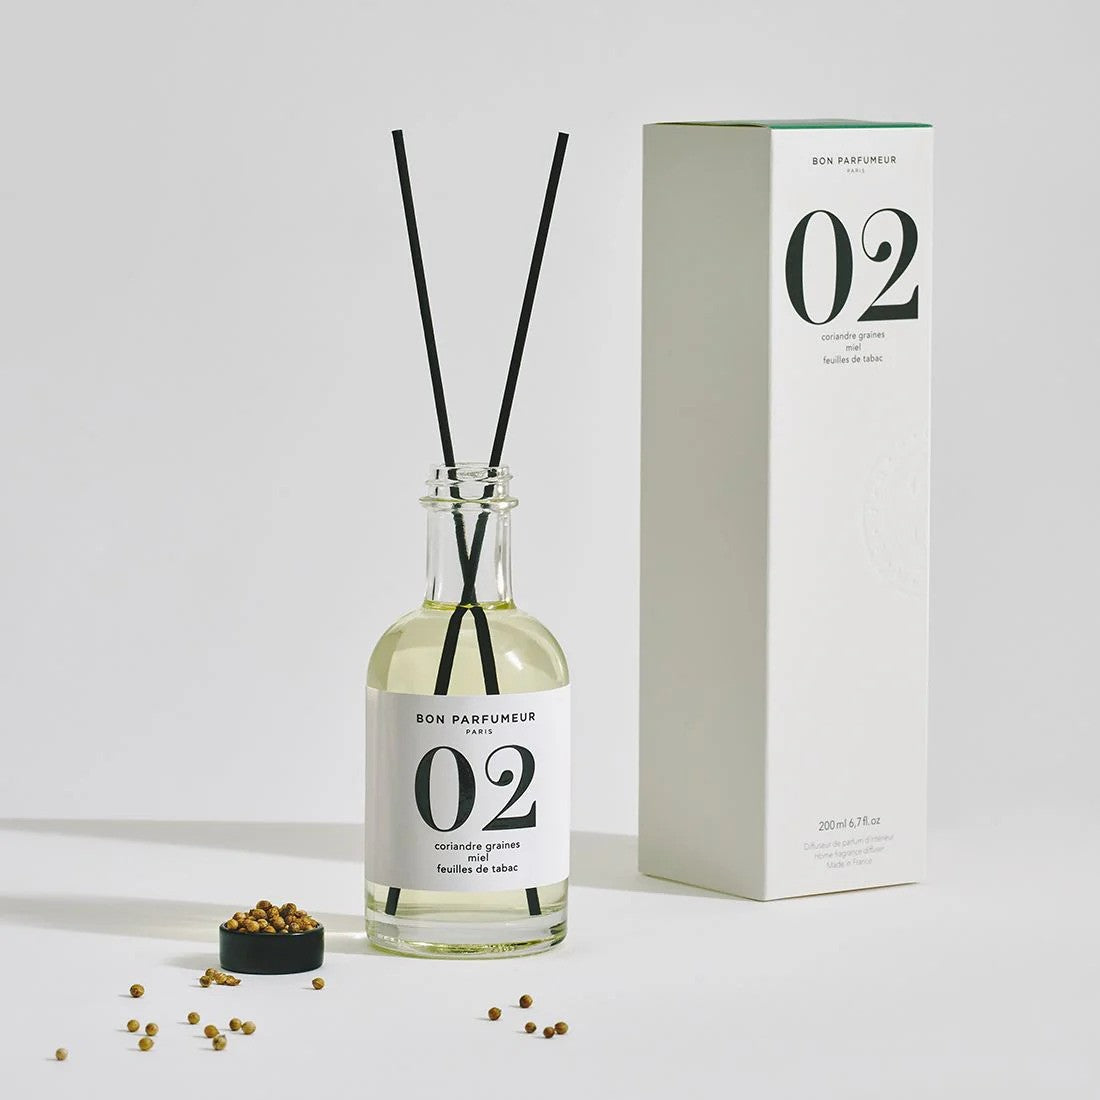 Bon Parfumeur | Diffuseur 02  02 Graines de coriandre, Miel et Feuilles de Tabac  200 ml